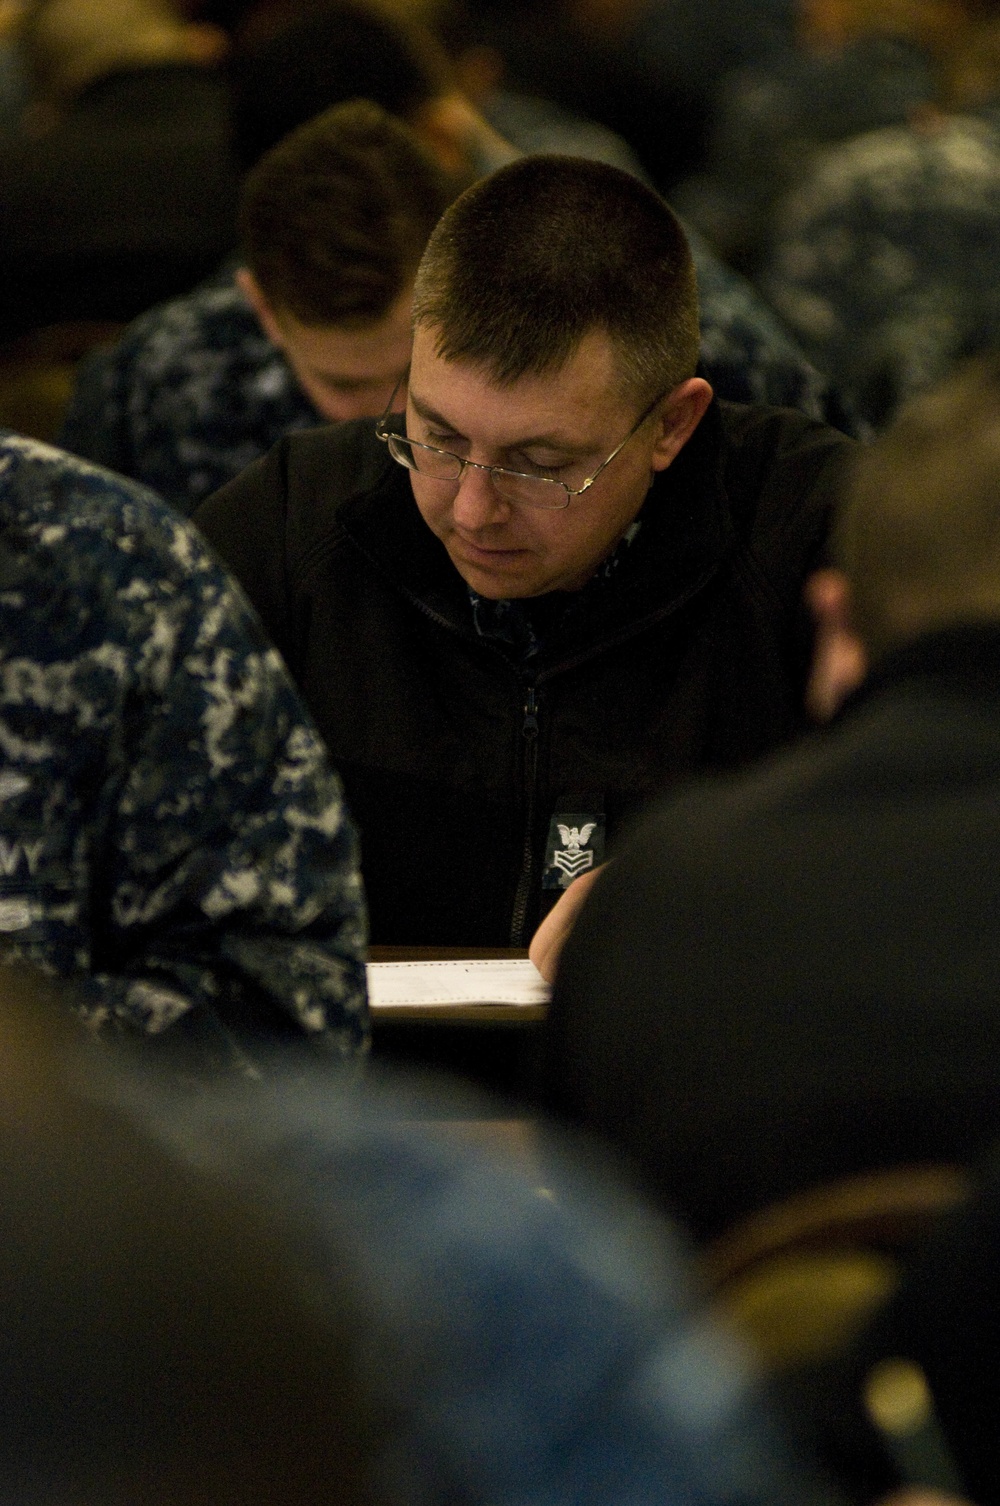 Navy-wide E-7 advancement exam